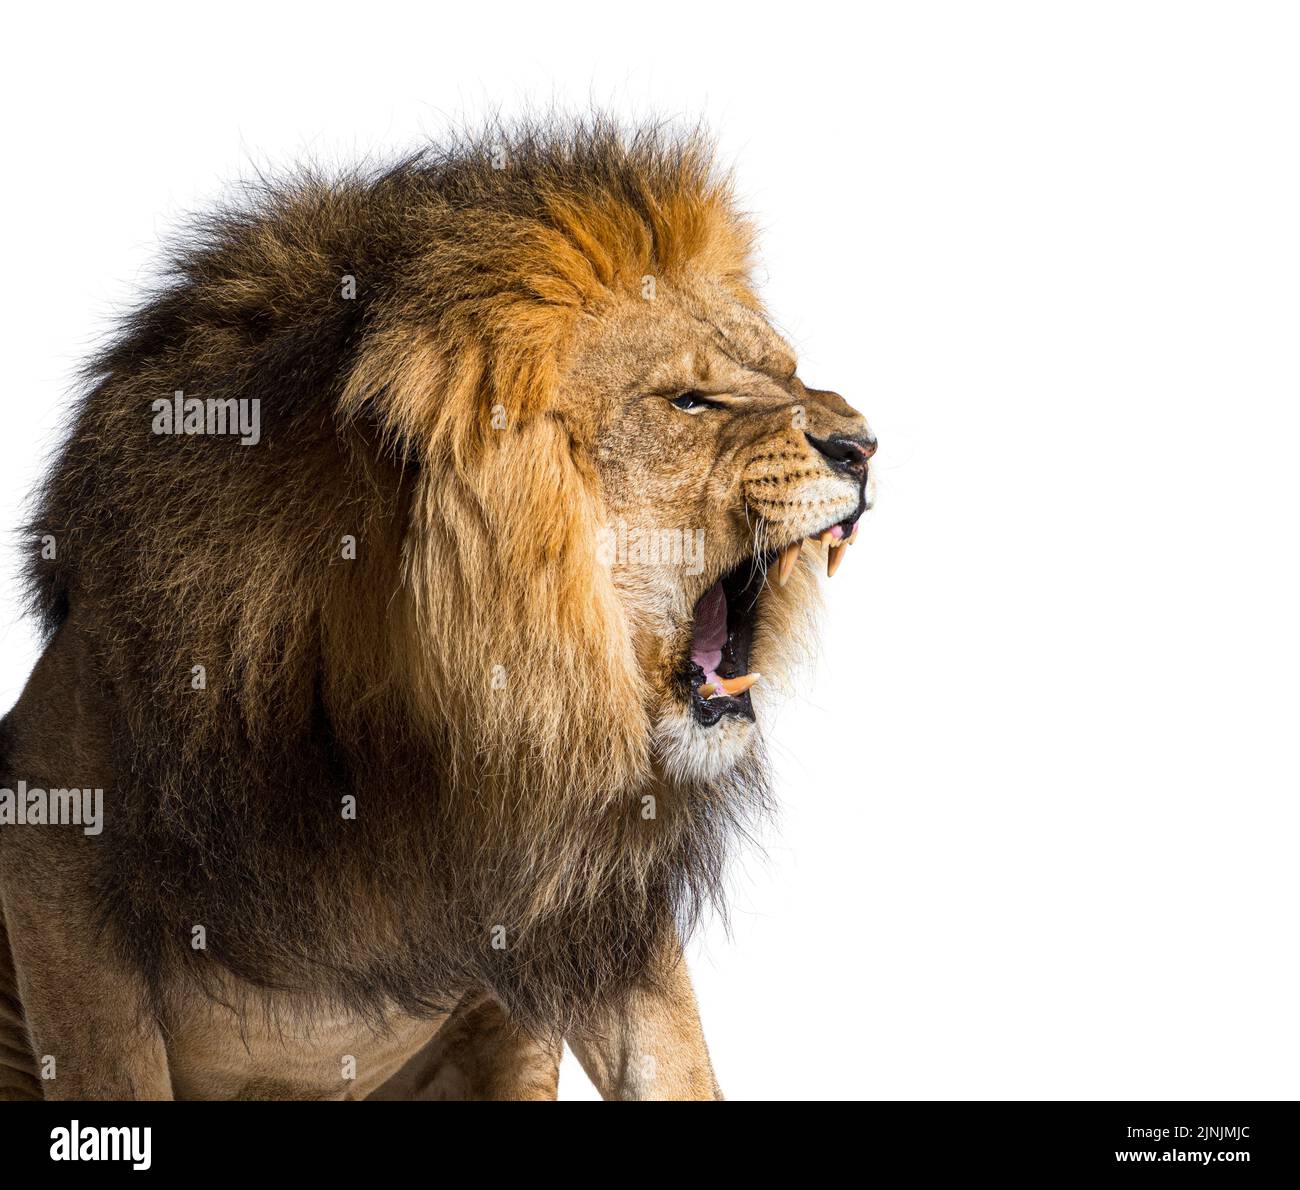 Homme adulte lion rugissant et montrant ses canines agressivement, Panthera leo, isolé sur blanc Banque D'Images